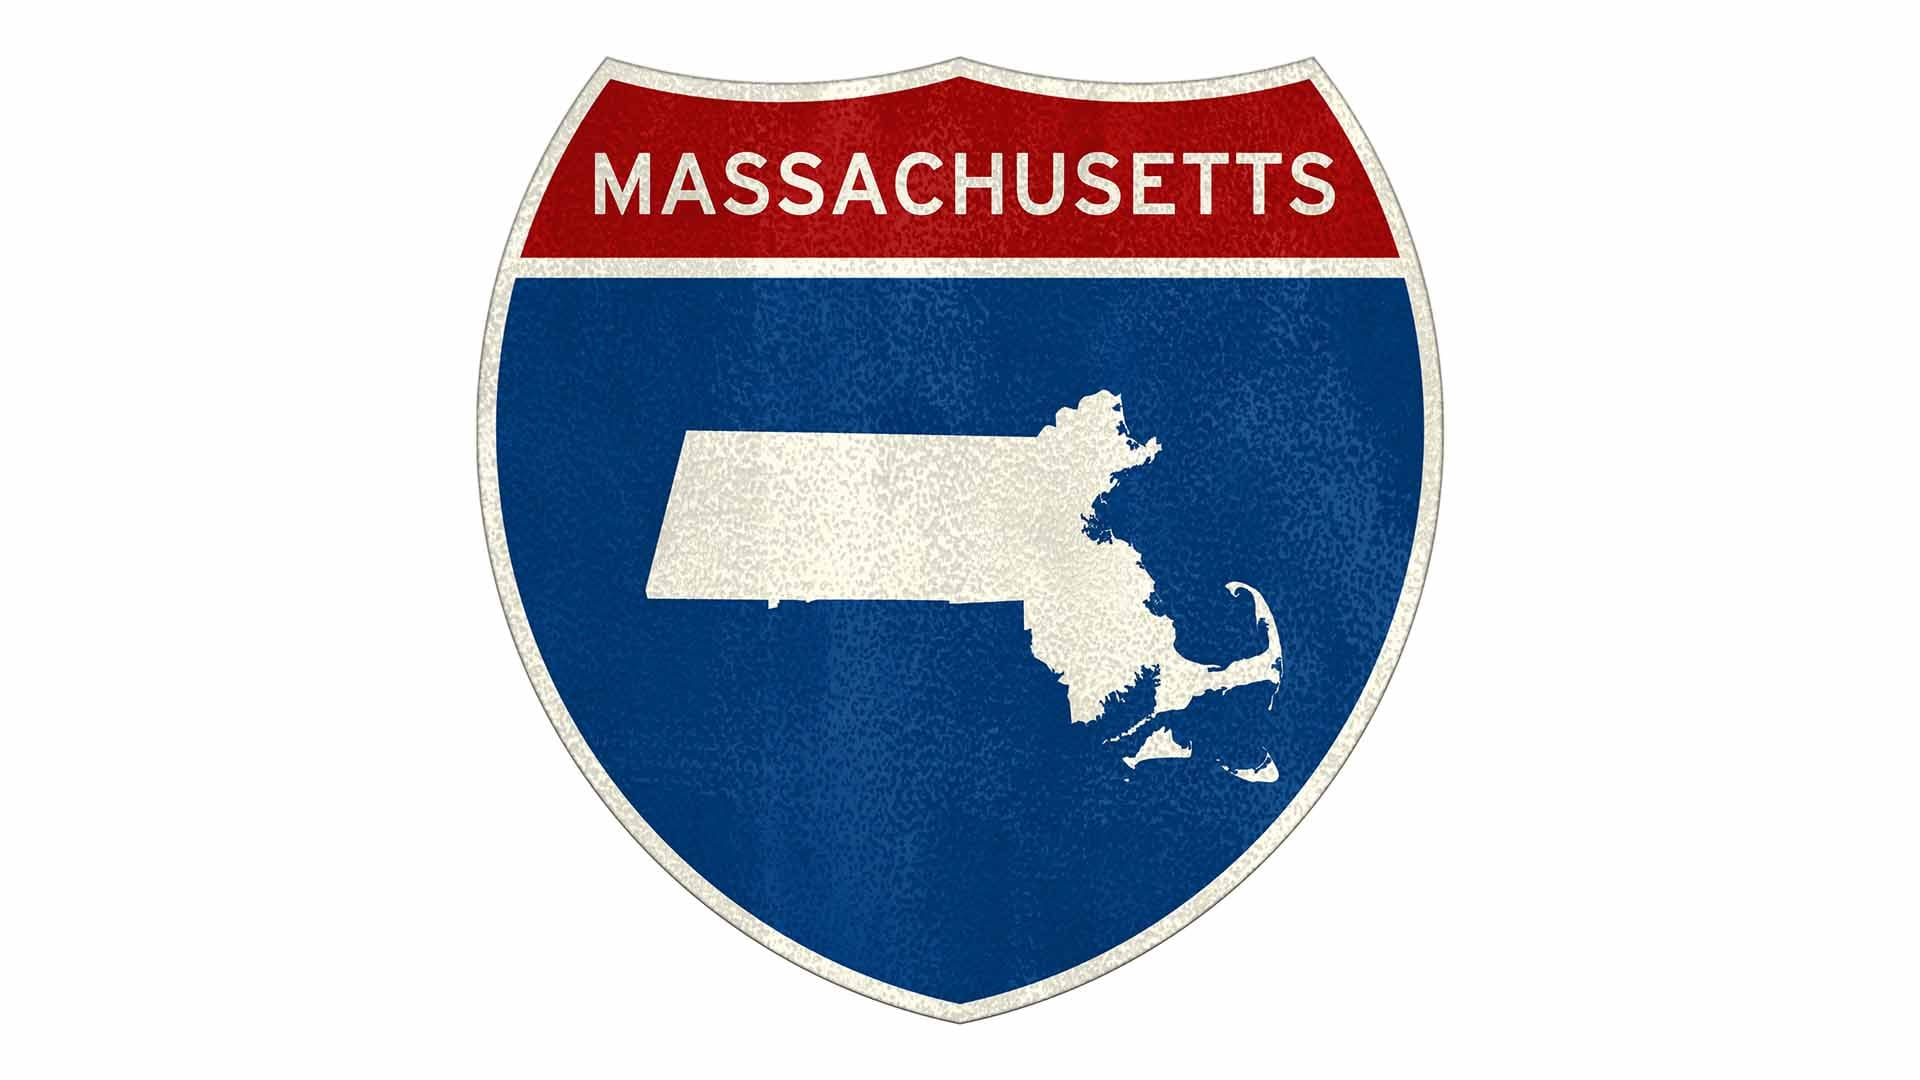 Massachusetts state roadside sign